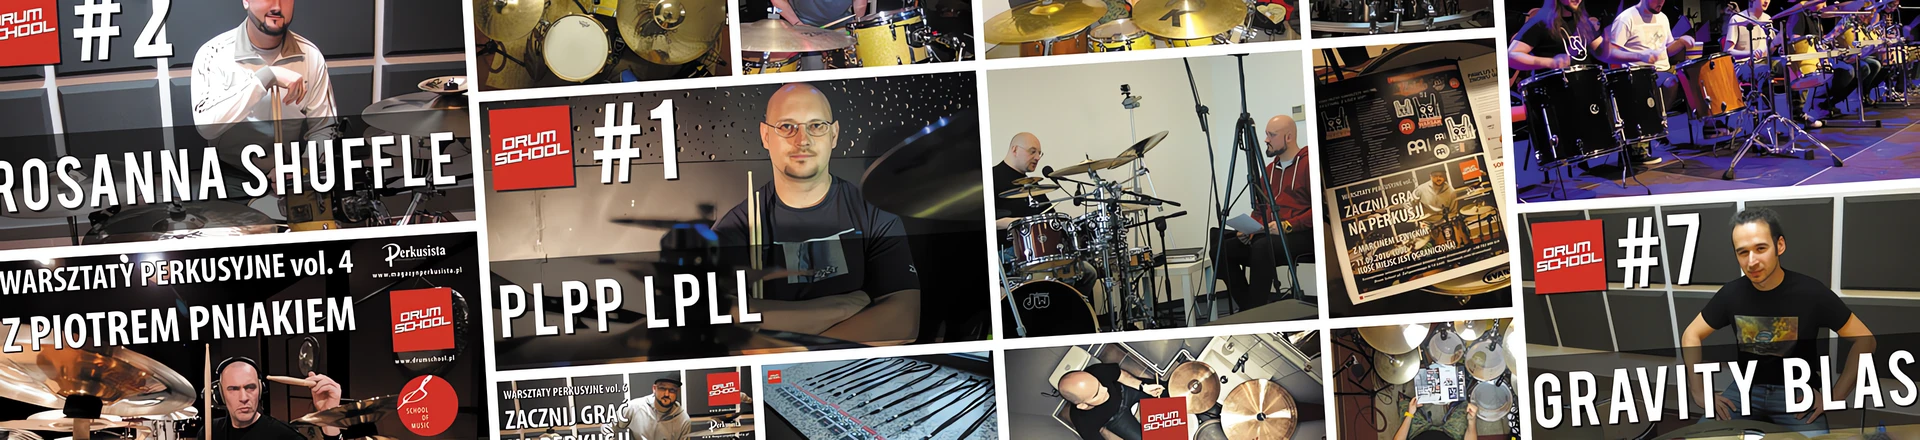 Polskie Szkoły Perkusyjne: DrumSchool.pl #1